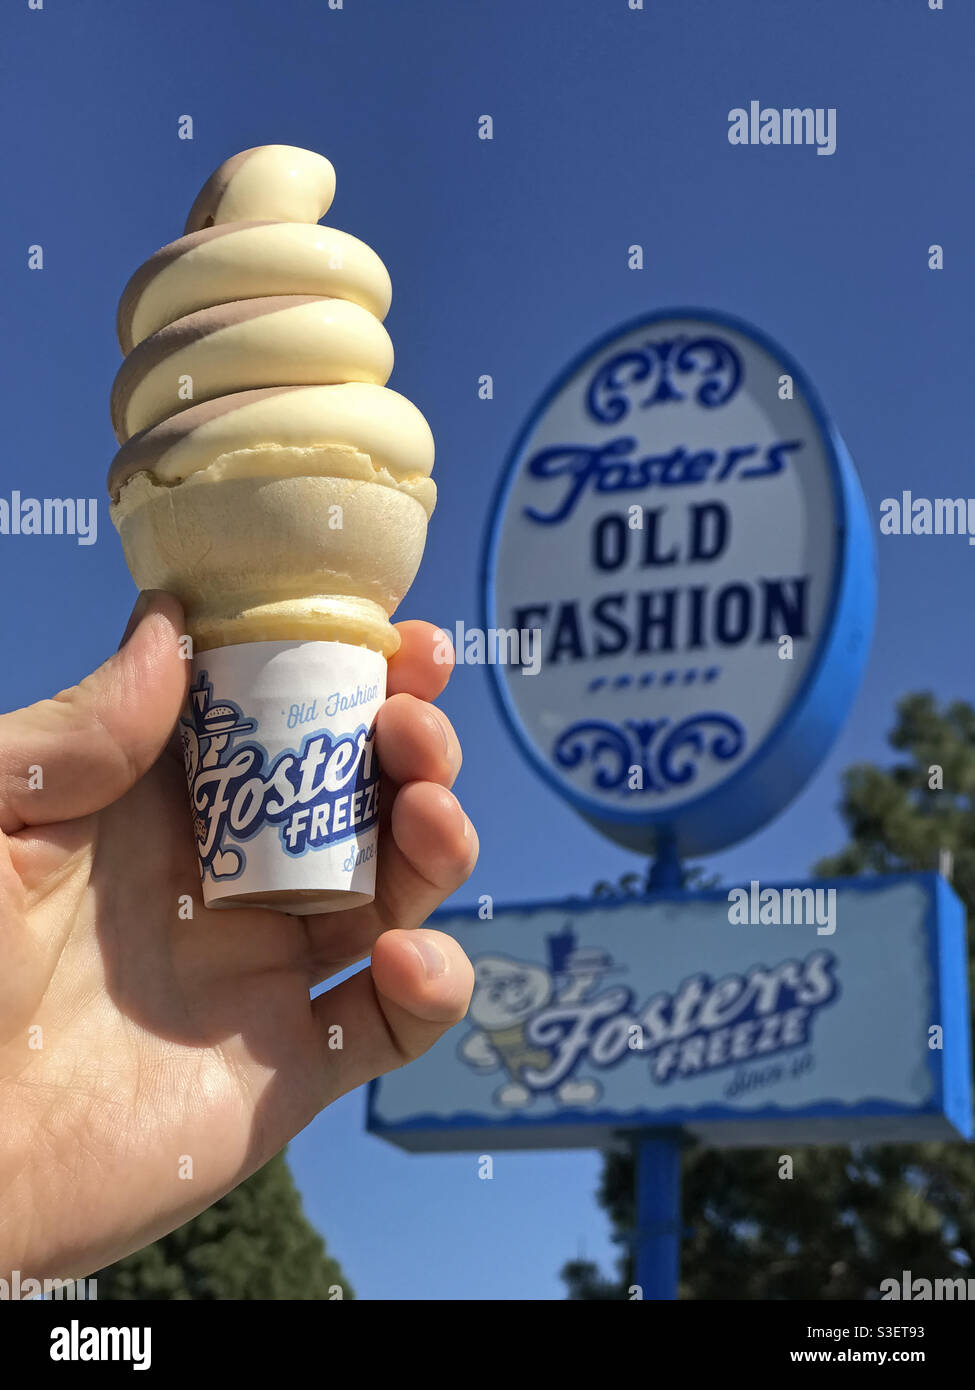 Burbank, CA / USA - 28 marzo 2021: Di fronte a un cartello Fosters Freeze,  una mano tiene un cono di gelato al cioccolato e alla vaniglia. Questa  catena di ristoranti della